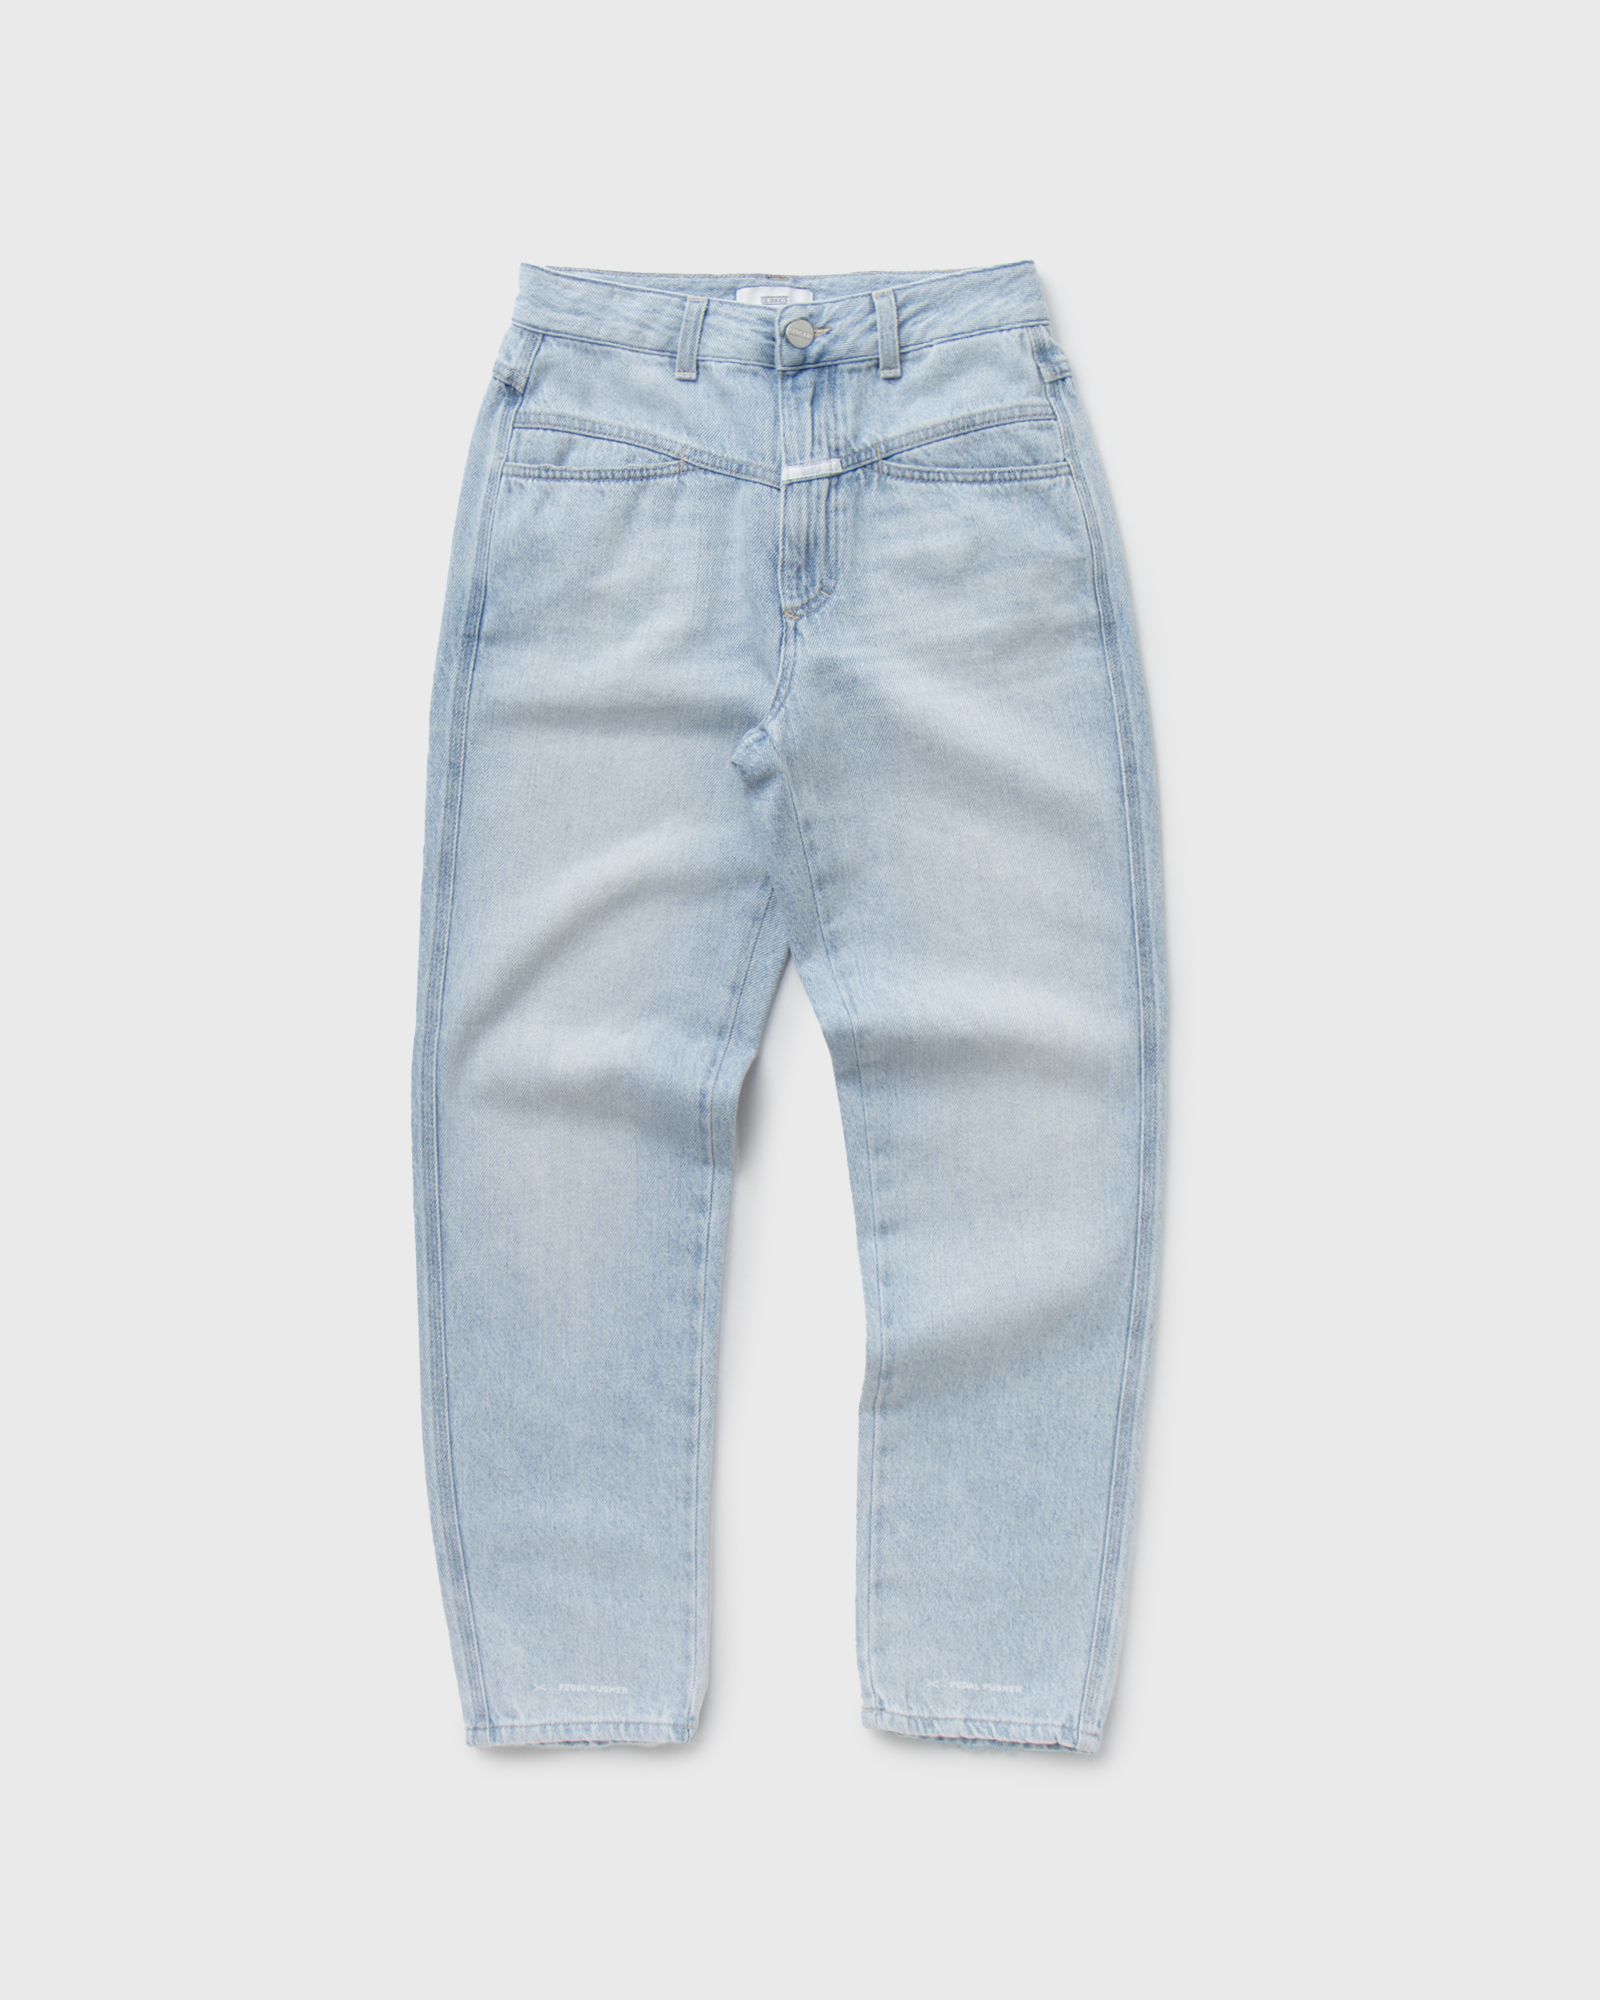 CLOSED - pedal pusher women jeans blue in größe:xl